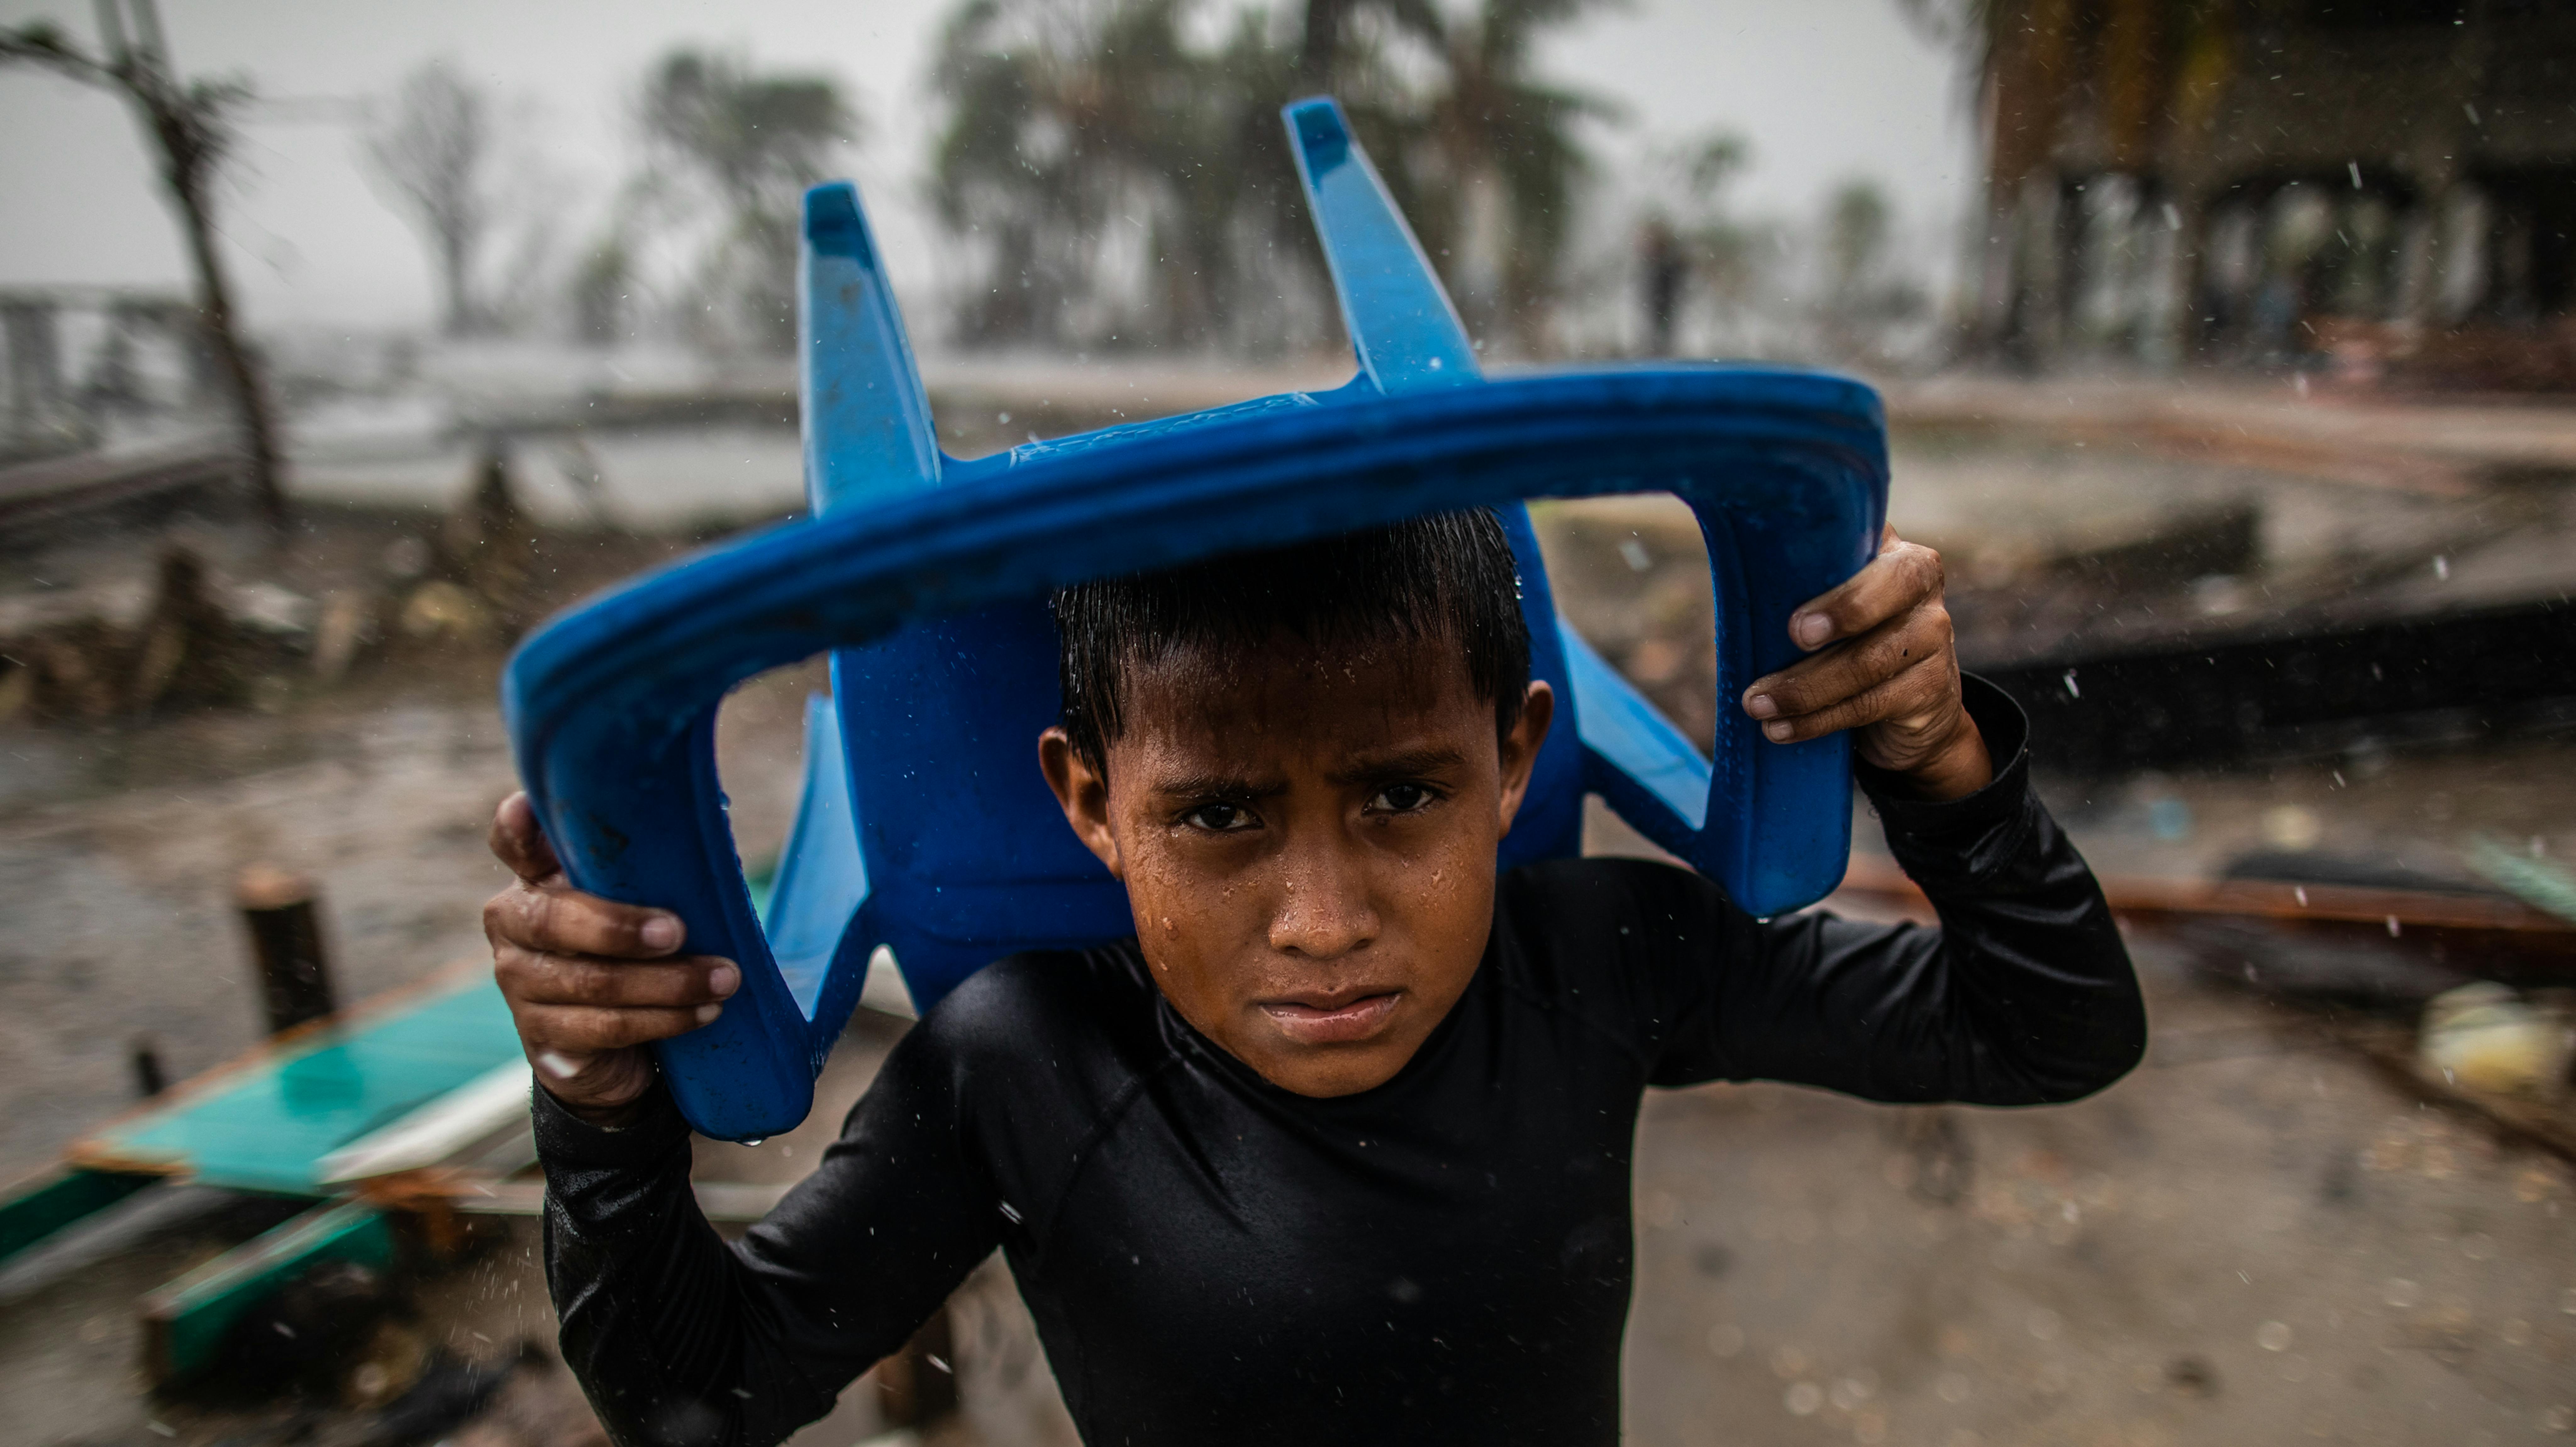 rain with a plastic chair, ​Controlla i dettagli 77 / 5.000 Risultati della traduzione Risultato di traduzione Nicaragua, un bambino si protegge dalla forte pioggia con una sedia di plastica,